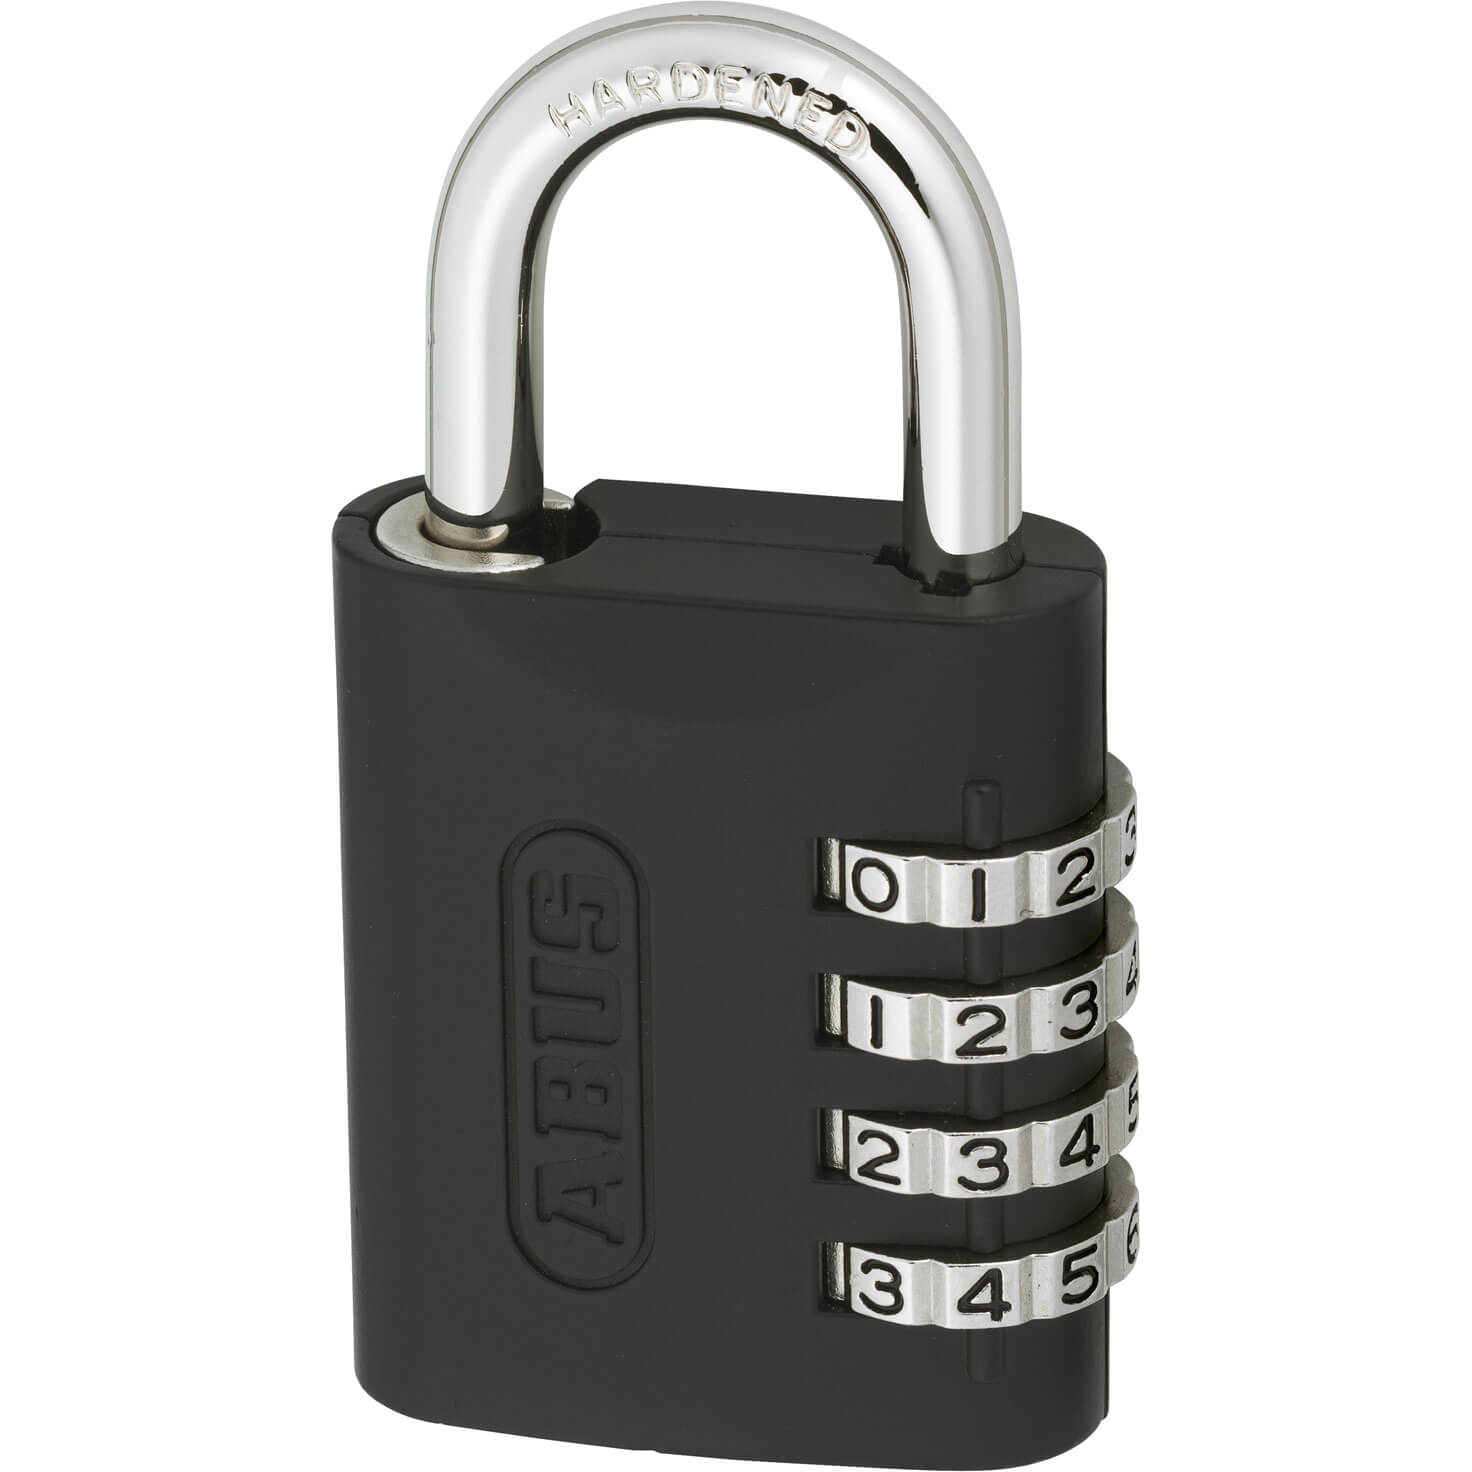 Photos - Door Lock ABUS 158 Series Combination Key Override Padlock 45mm Standard 158KC45 